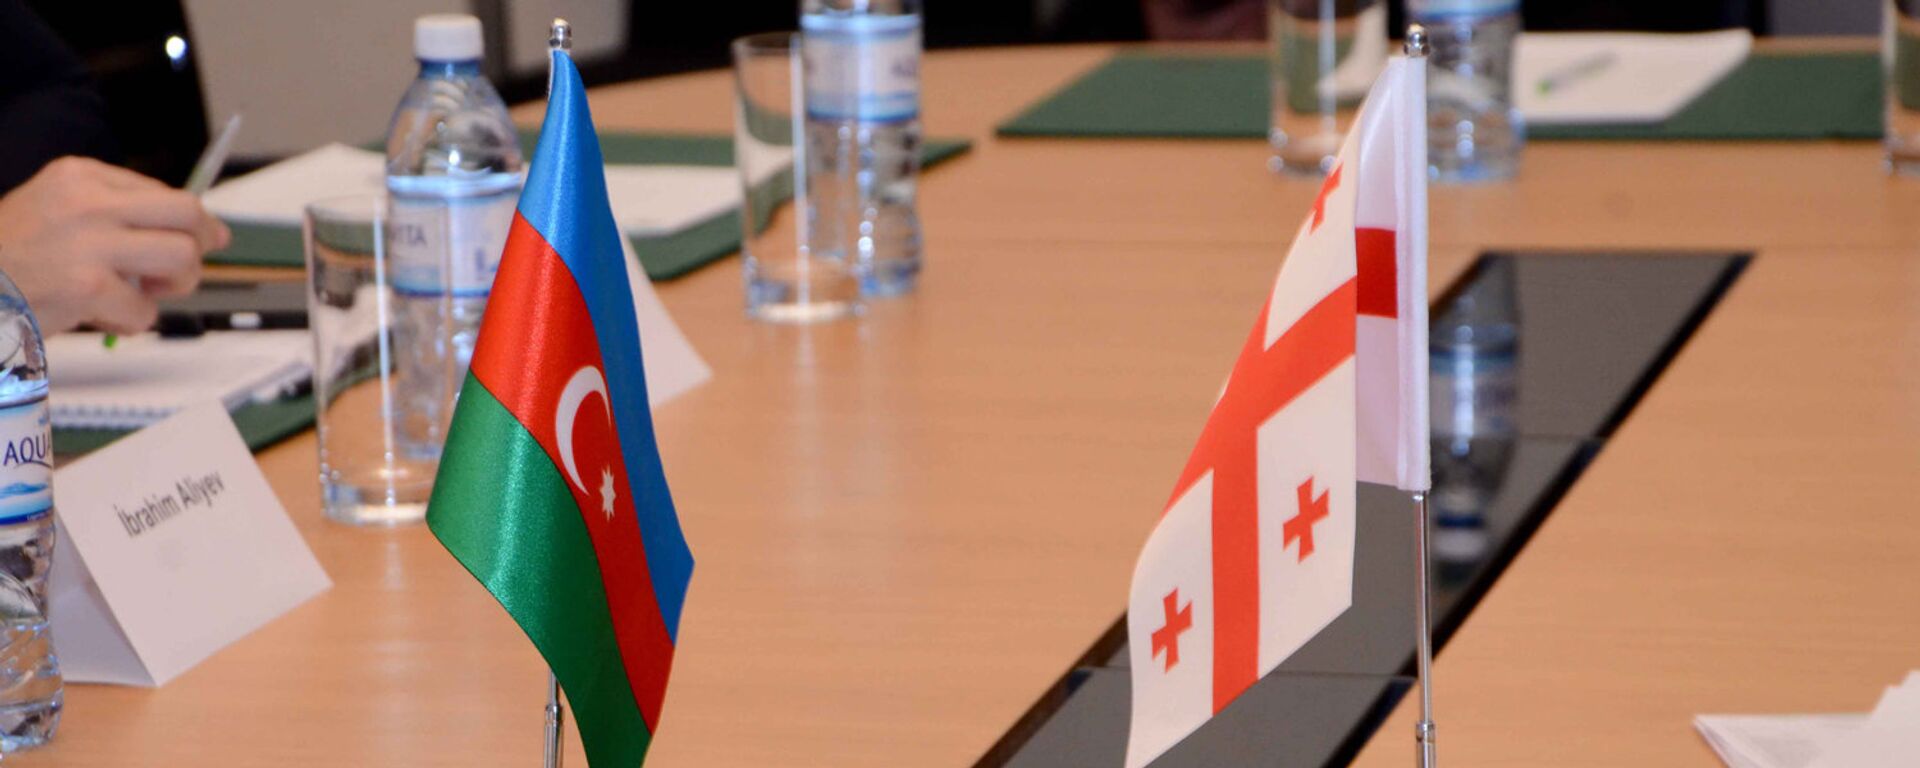 Заседание совместной азербайджано-грузинской комиссии по вопросам международных автомобильных связей, Баку, 9 февраля 2017 года - Sputnik Азербайджан, 1920, 05.05.2021